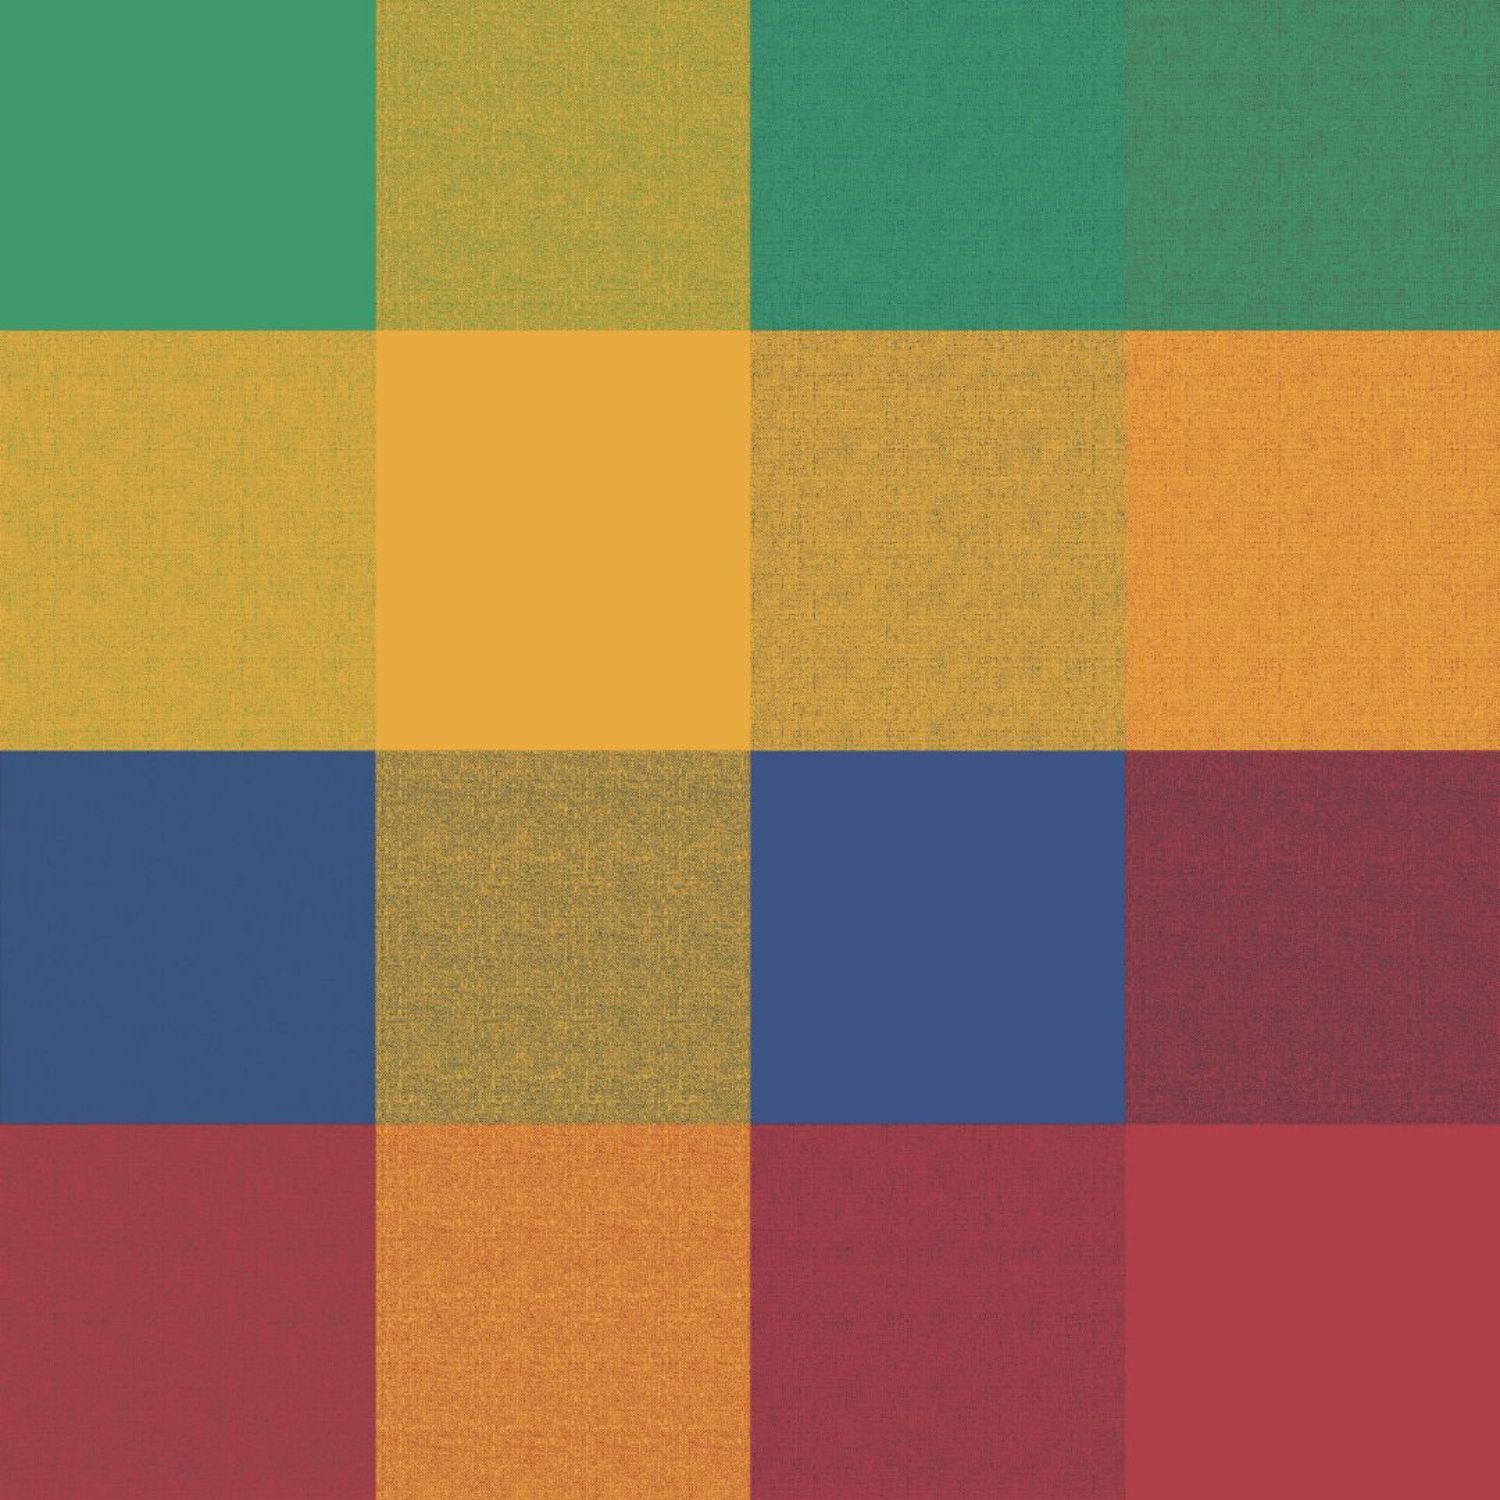 scotland-arancio-telo-arredo-copritutto-tuttofare-geometrico-blu-rosso-giallo-verde-scozzese-classico-dettaglio